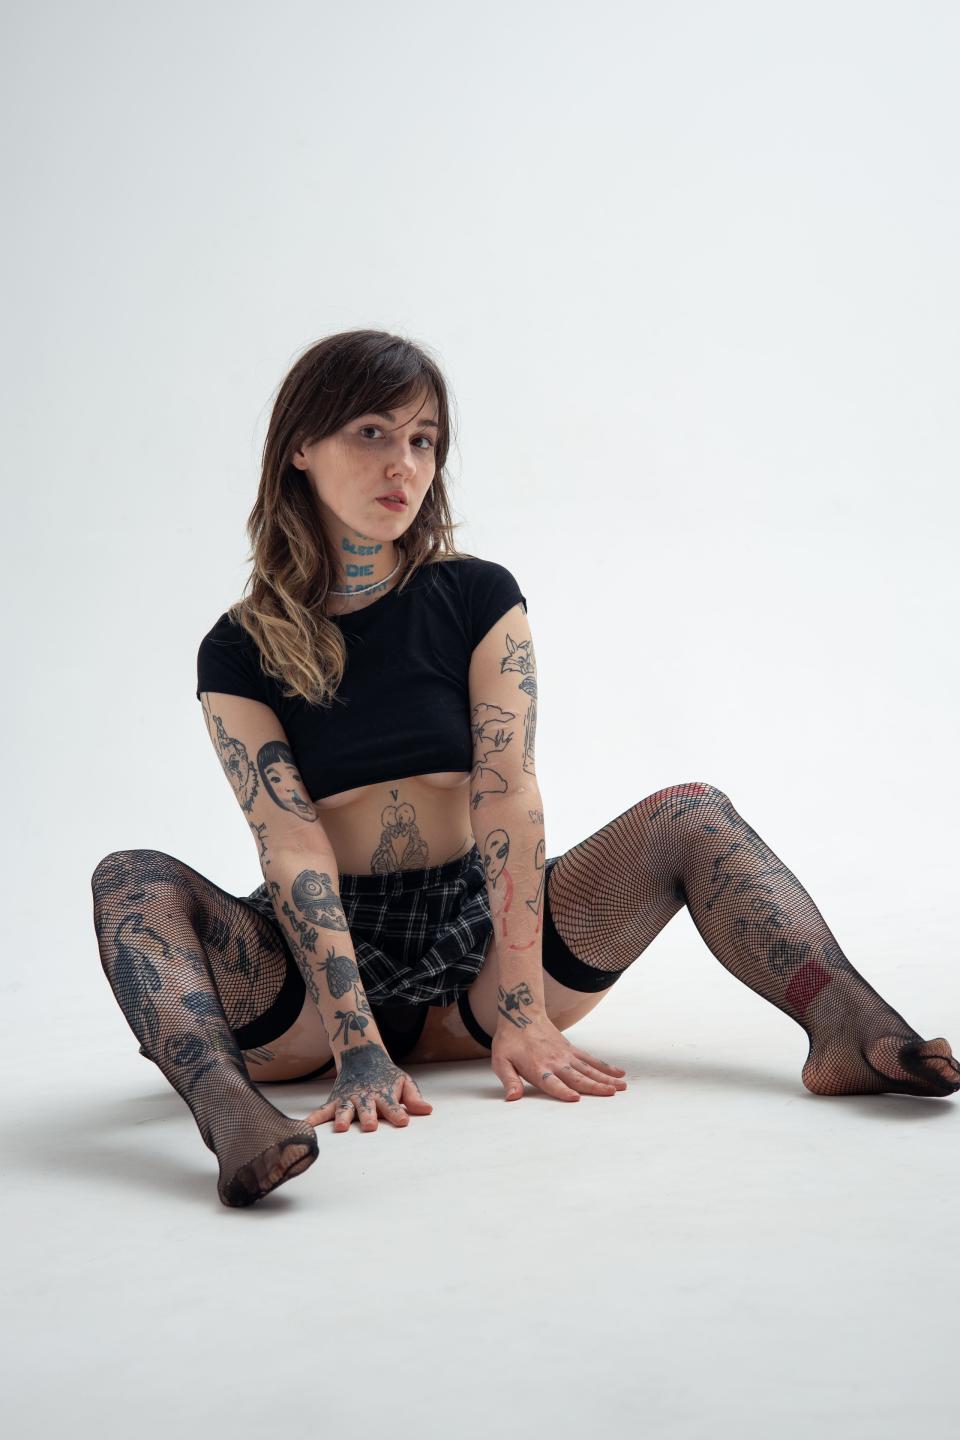 Image of cam model MaisyGilbert from XloveCam